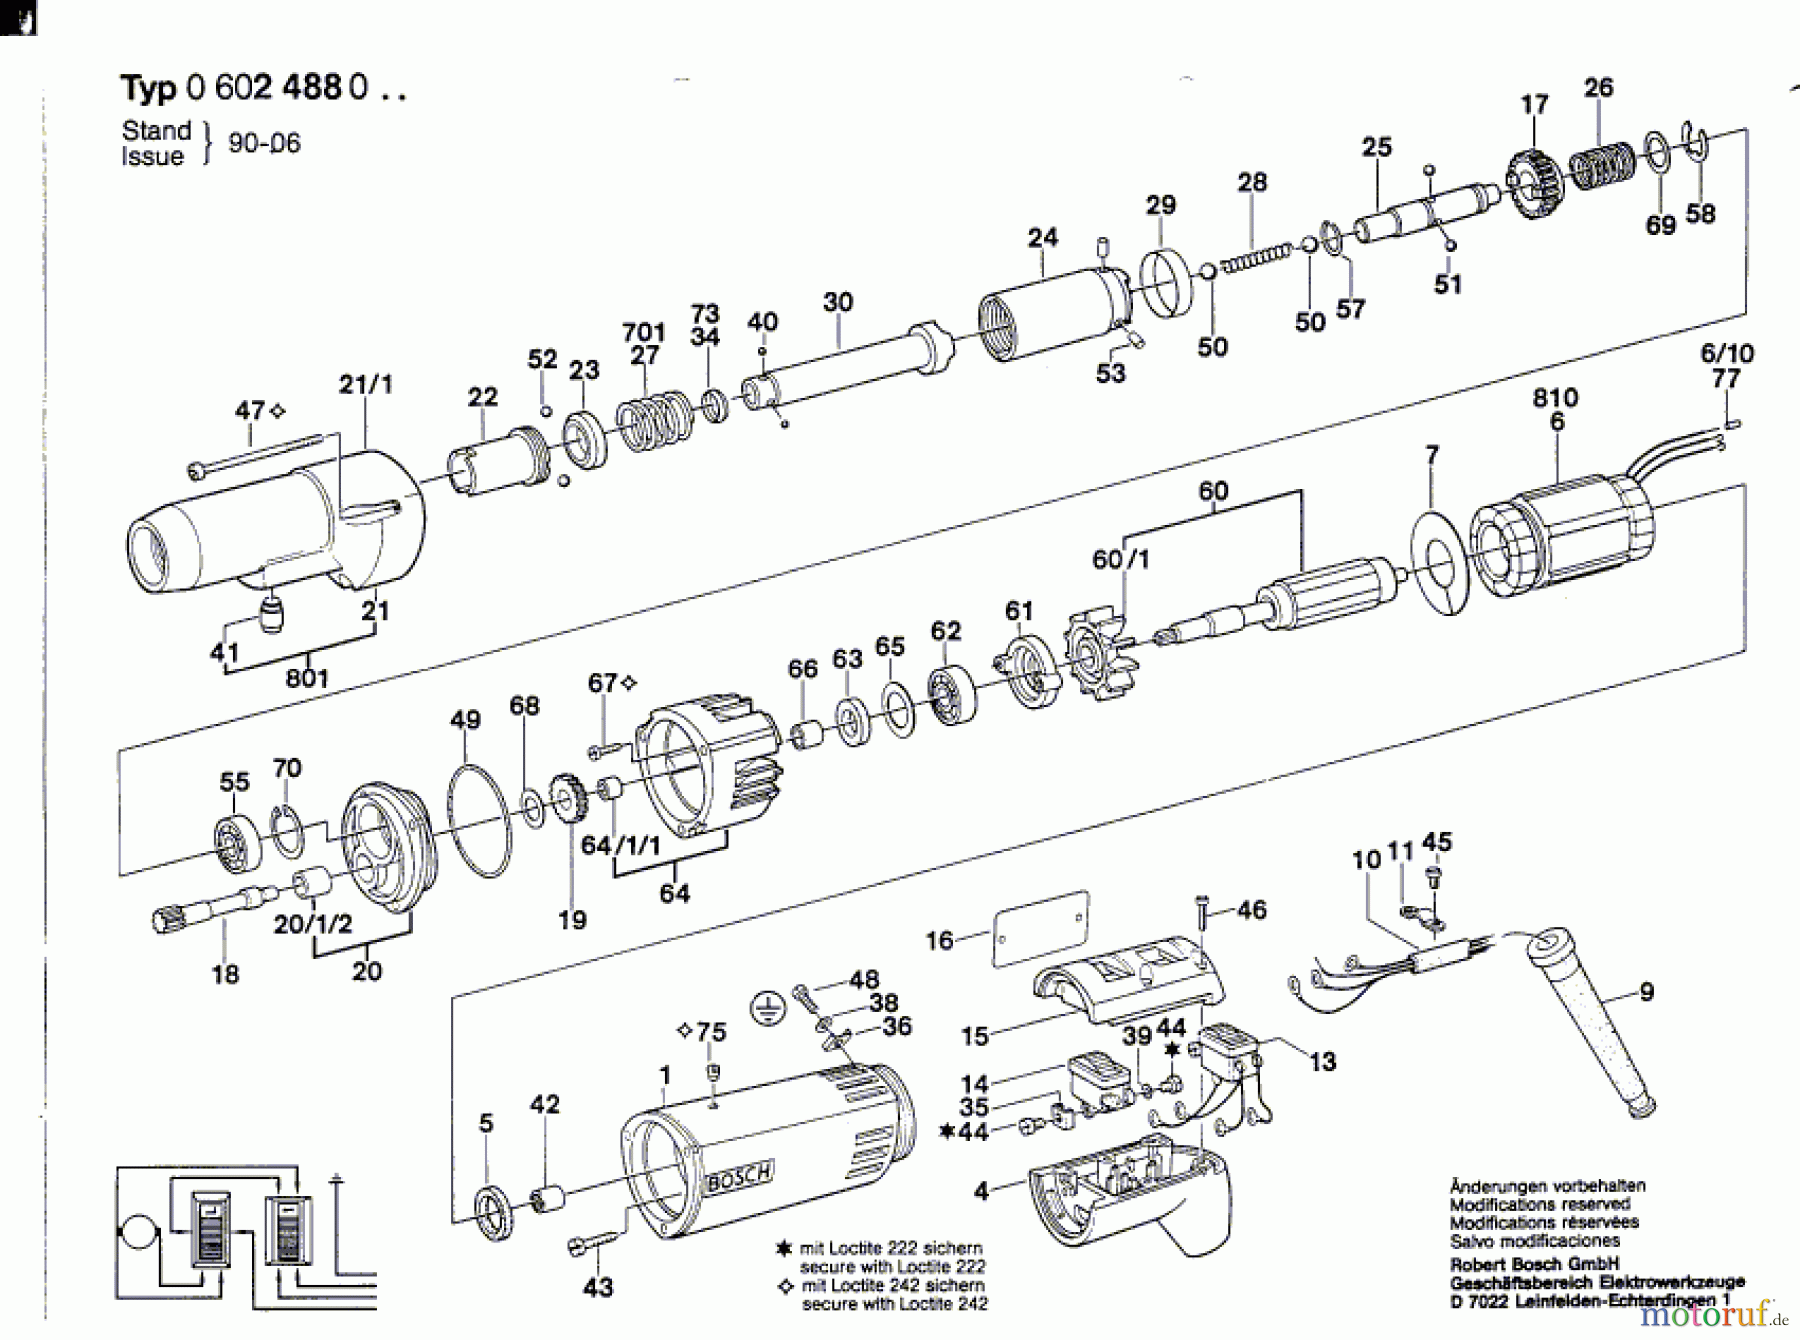  Bosch Werkzeug Hf-Abschaltschrauber ---- Seite 1